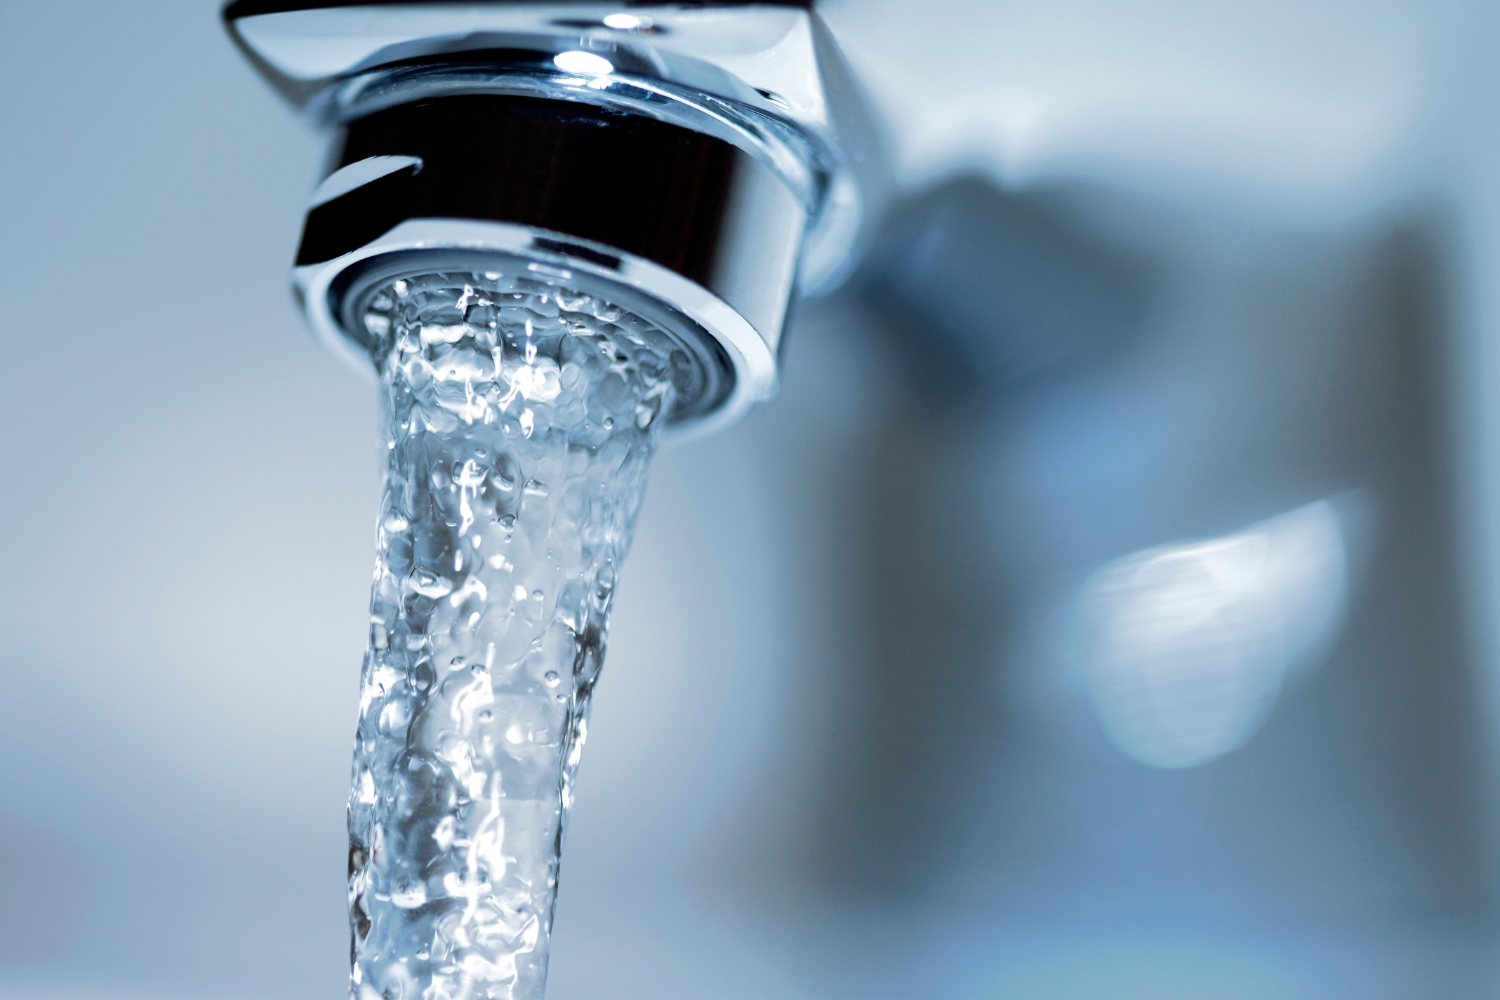 Tall de subministrament d’aigua previst per dijous 29 de febrer